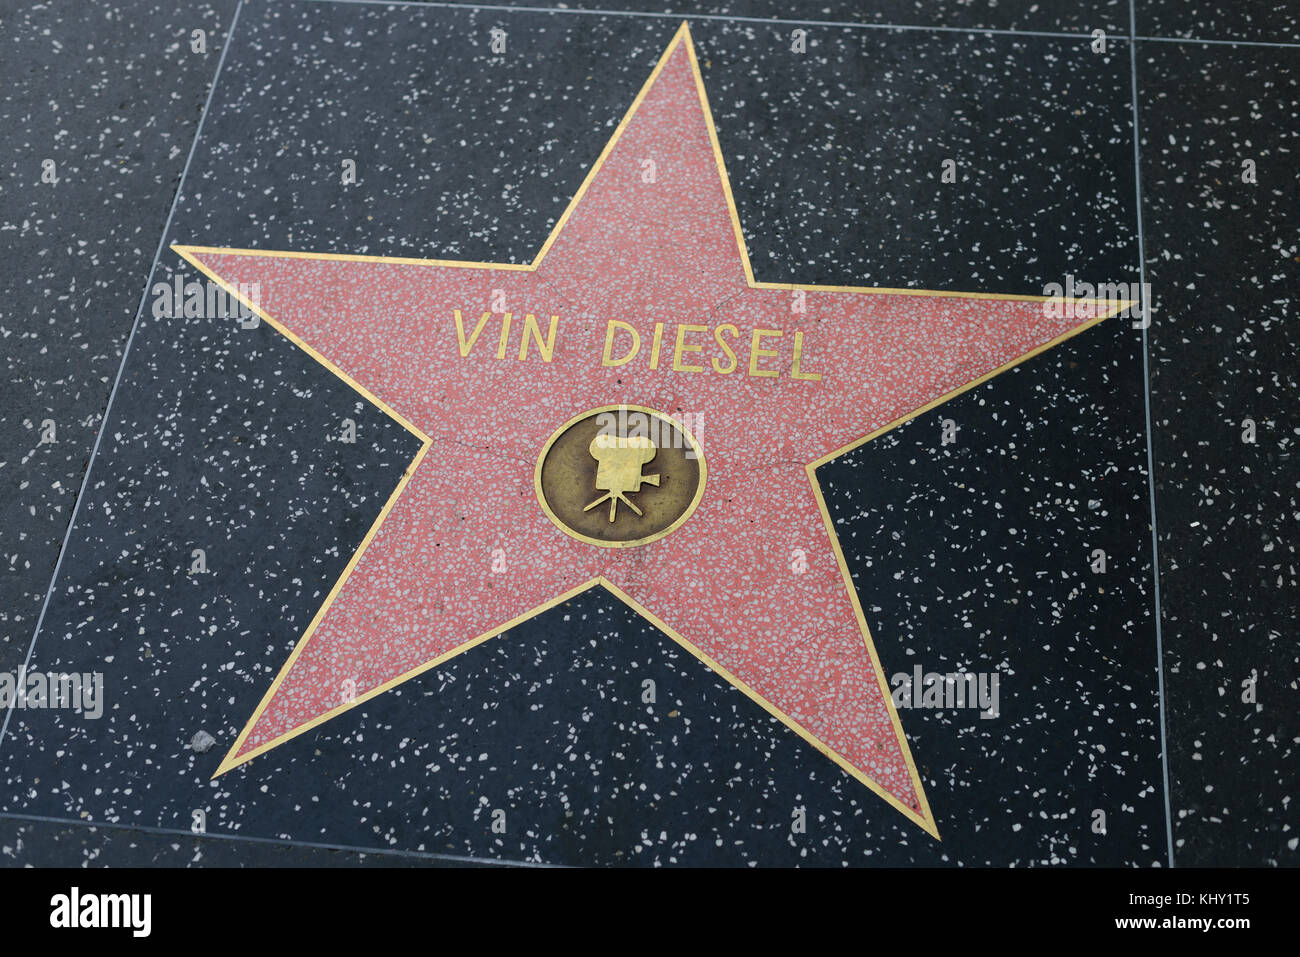 HOLLYWOOD, CA - 06 DÉCEMBRE : une star de Van Diesel sur le Hollywood Walk of Fame à Hollywood, Californie, le 6 décembre 2016. Banque D'Images